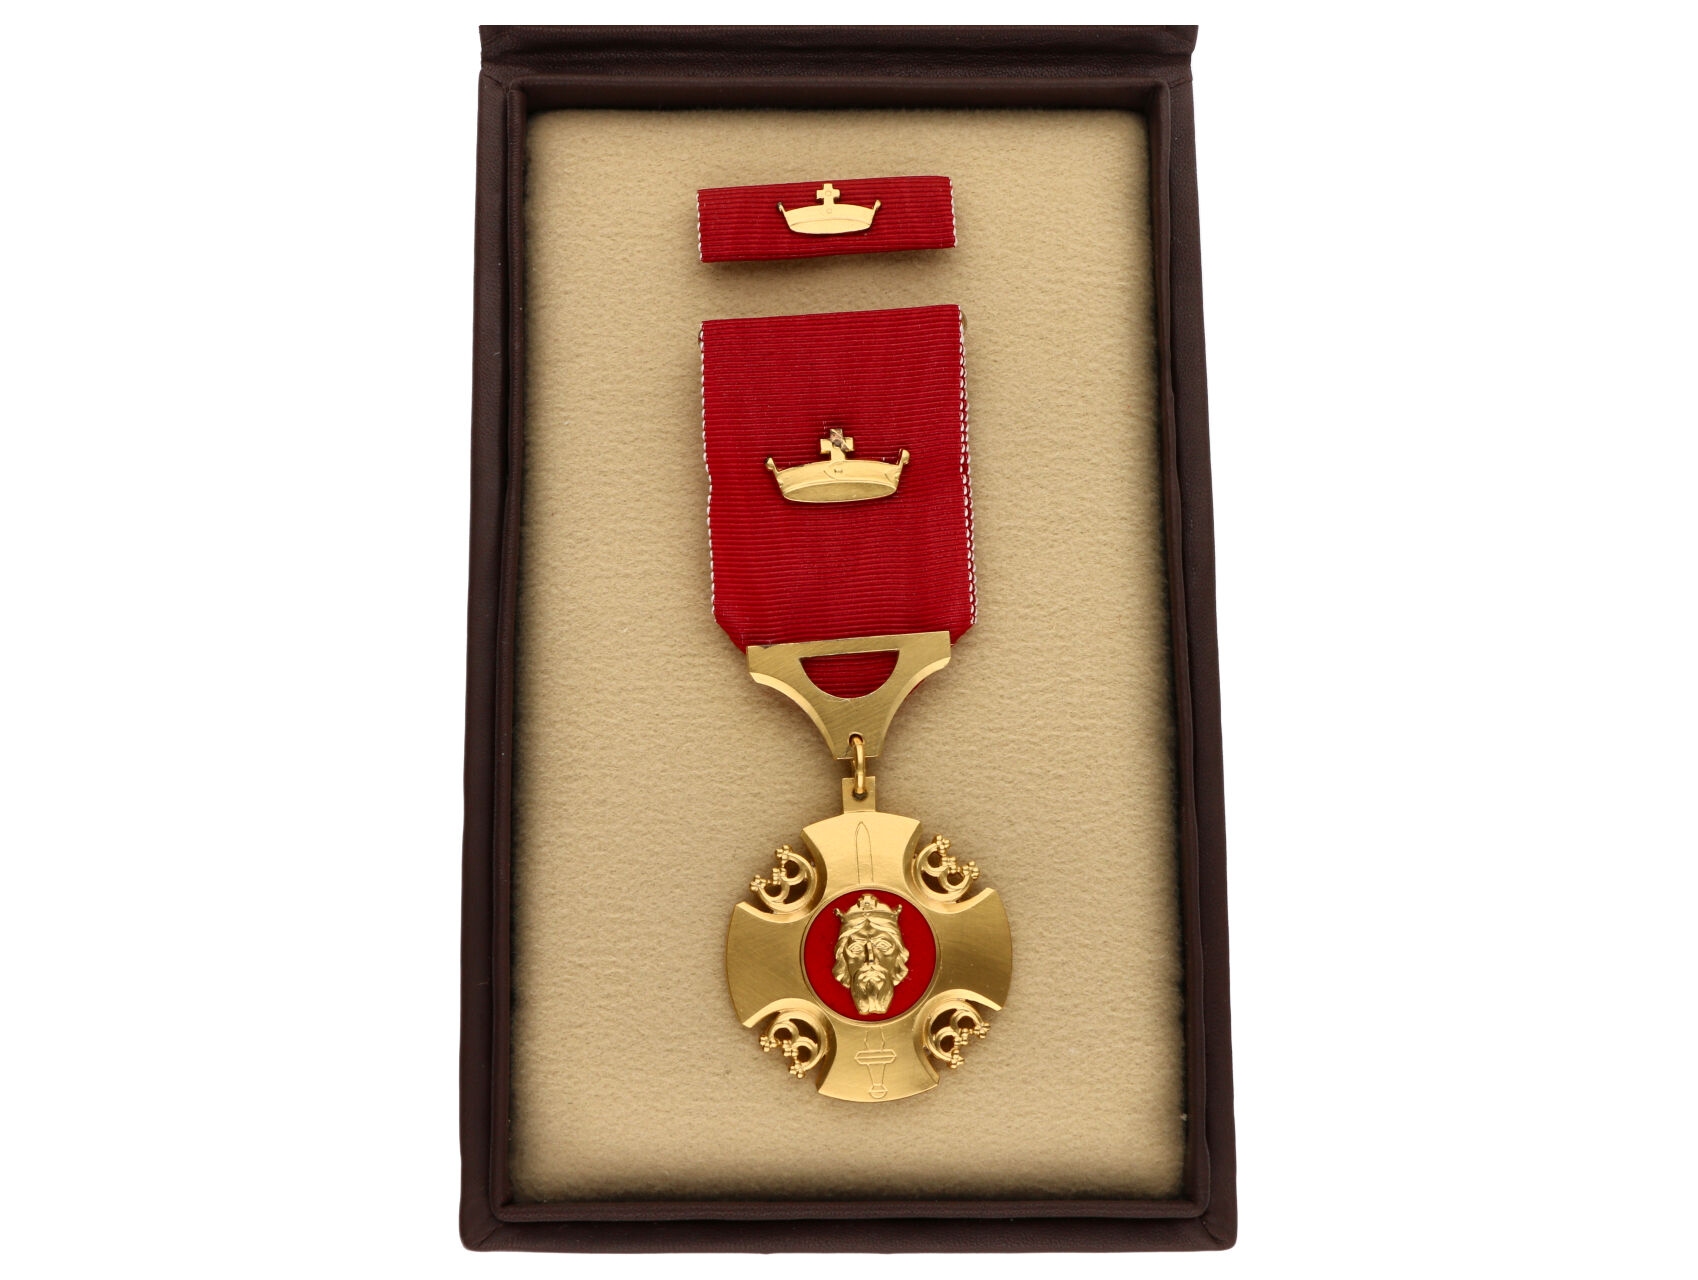 Pribinův kříž I. třídy, autorský odražek, značen EA2, pozlacené stříbro, punc Ag, ryzostní značka 925 a značka výrobce MK (mincovna Kremnica), originální etue.